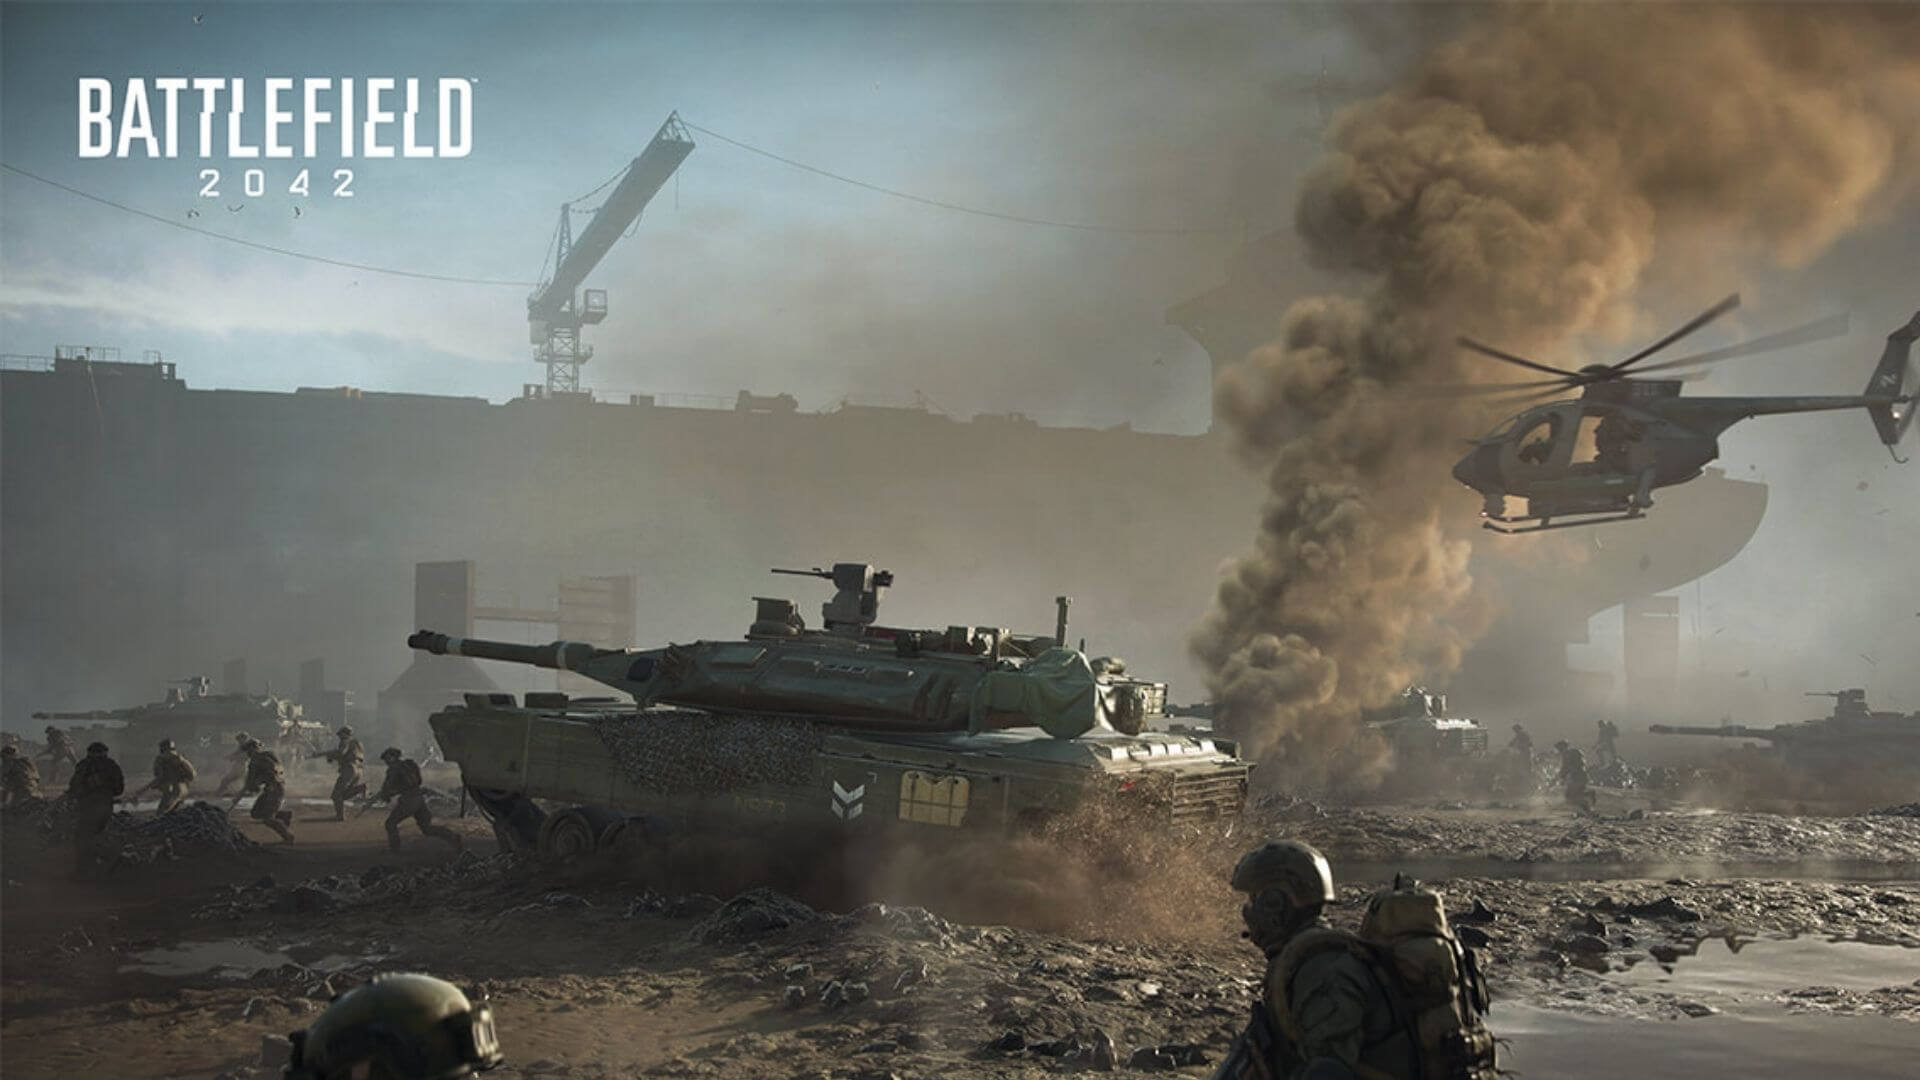 “坦克大战” 《战地2042》正式发售后将拥有双倍坦克